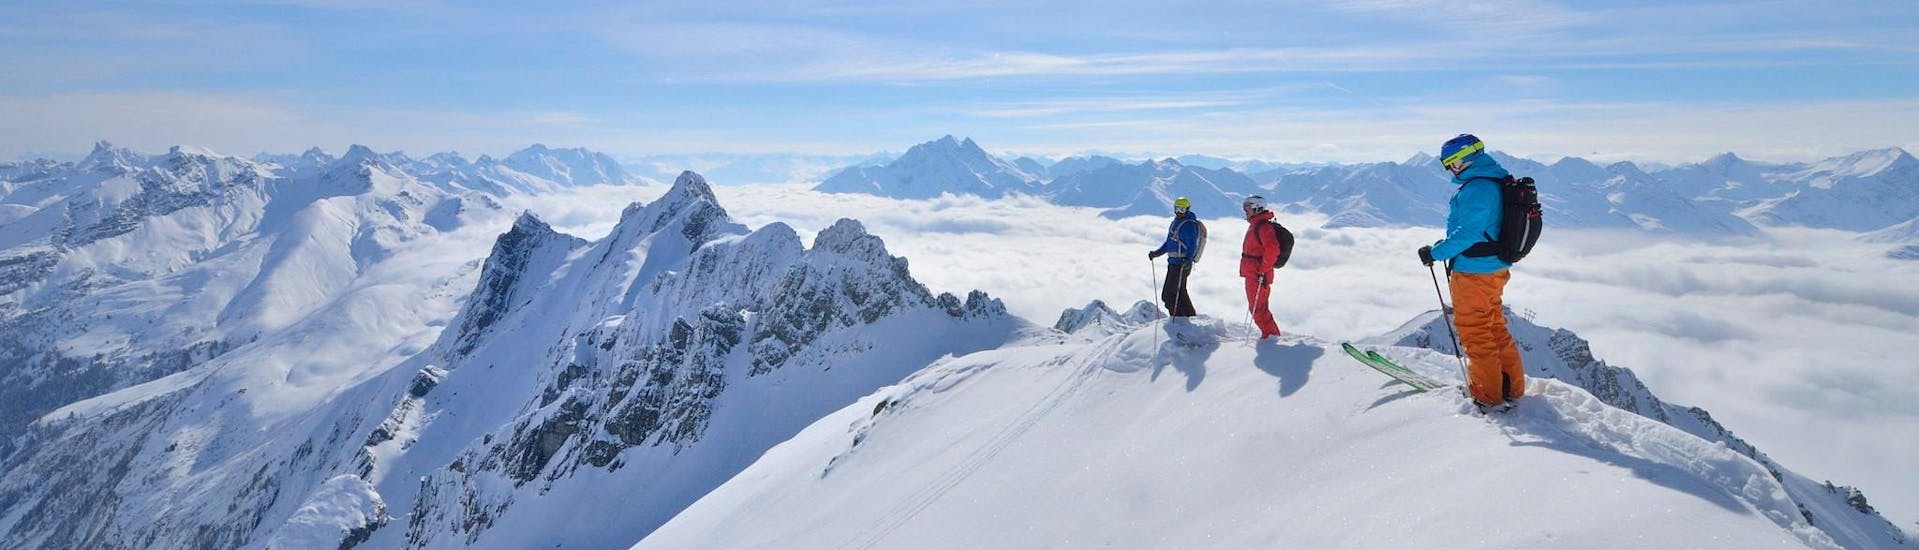 Einige Skifahrer stehen bei der Aktivität "Lawinenkurs- Avalanche Training, LVS Introduction 2.2.2019" mit dem Anbieter Freeride Hotspot Skischule am Gipfel eines Berges und genießen die Aussicht über die verschneite Landschaft.